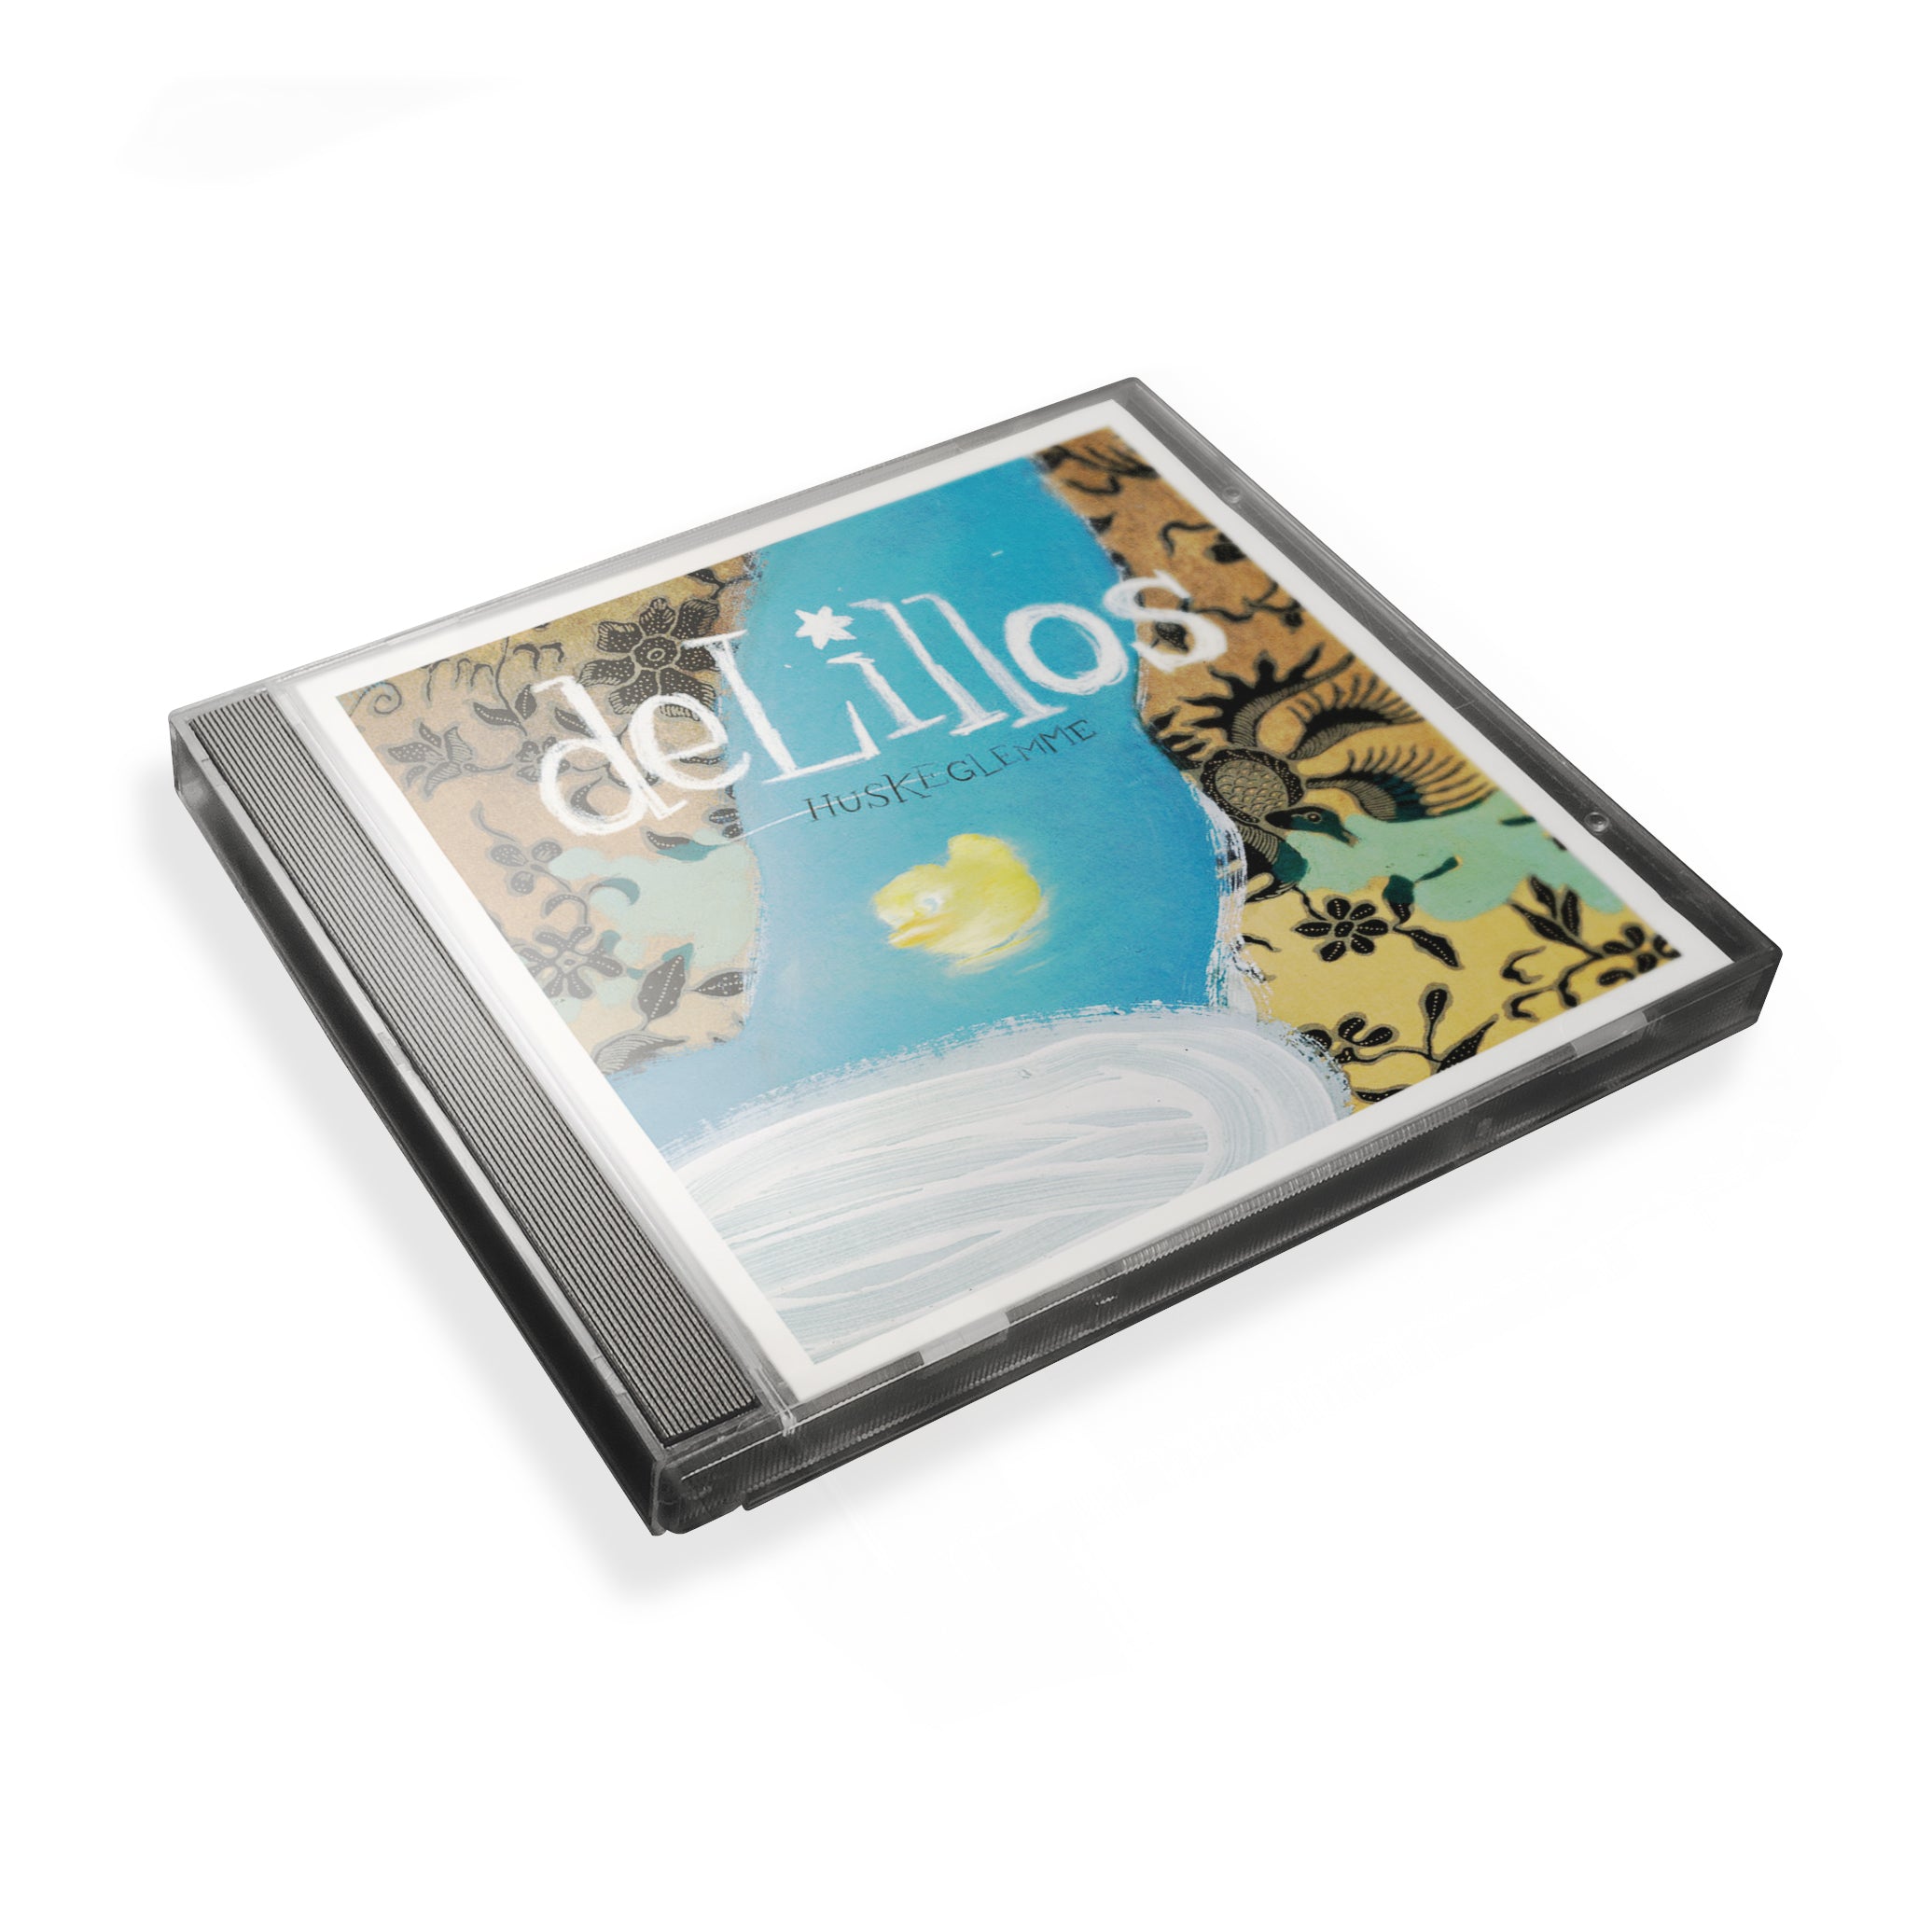 deLillos - CD - Huskeglemme (Hard cover)